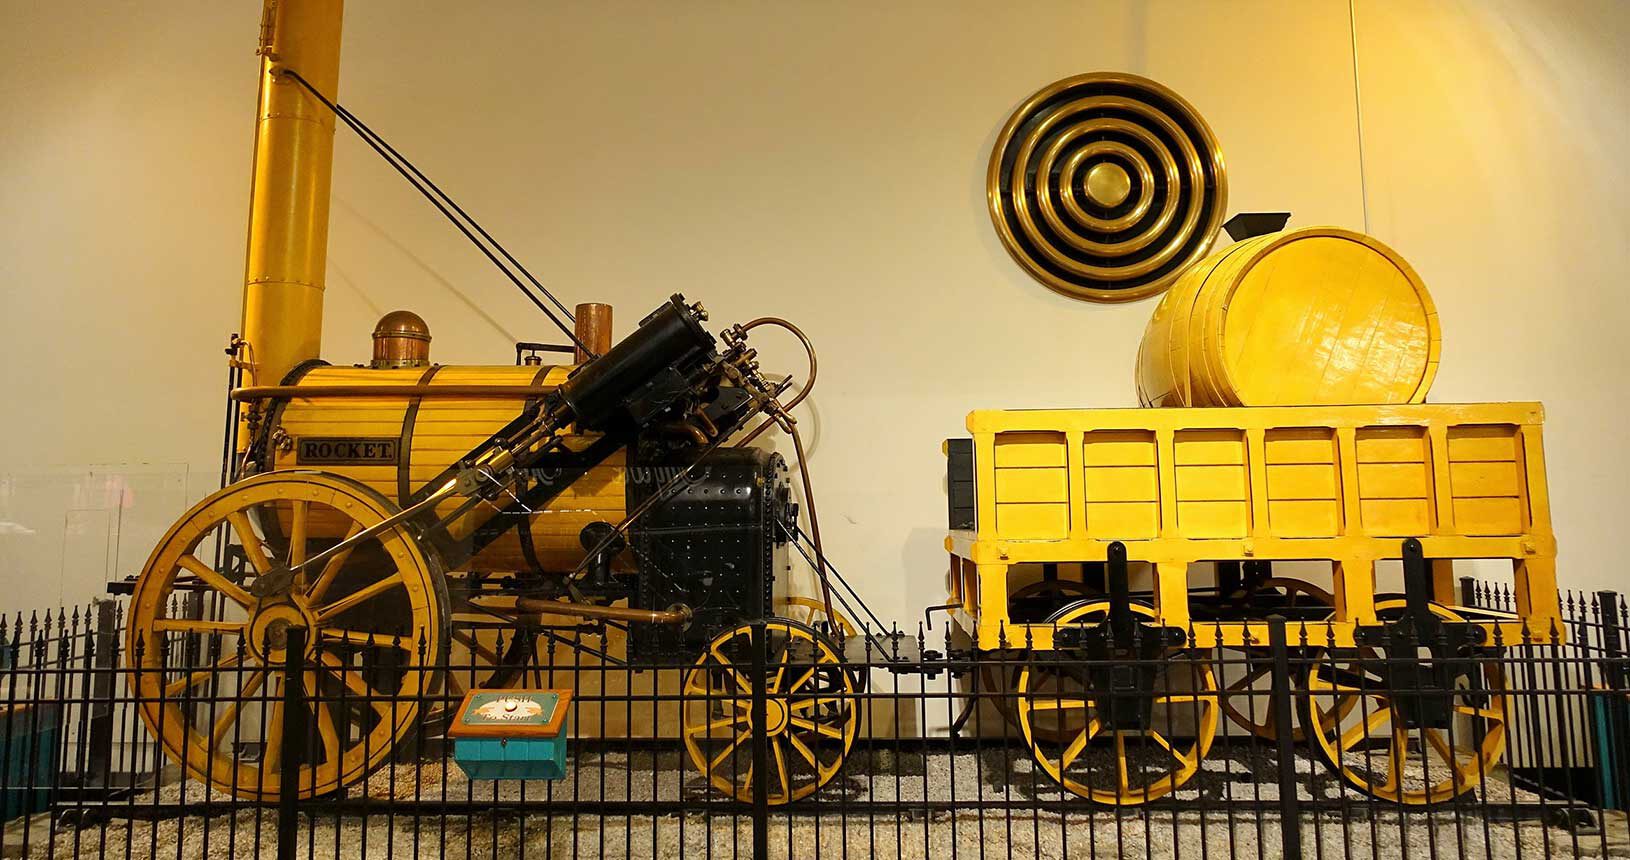 Erste Lokomotive "Rocket" (1829) von Robert Stephenson (1803-1859), Nachbau, Wissenschaftsmuseum Chicago (Public Domain)